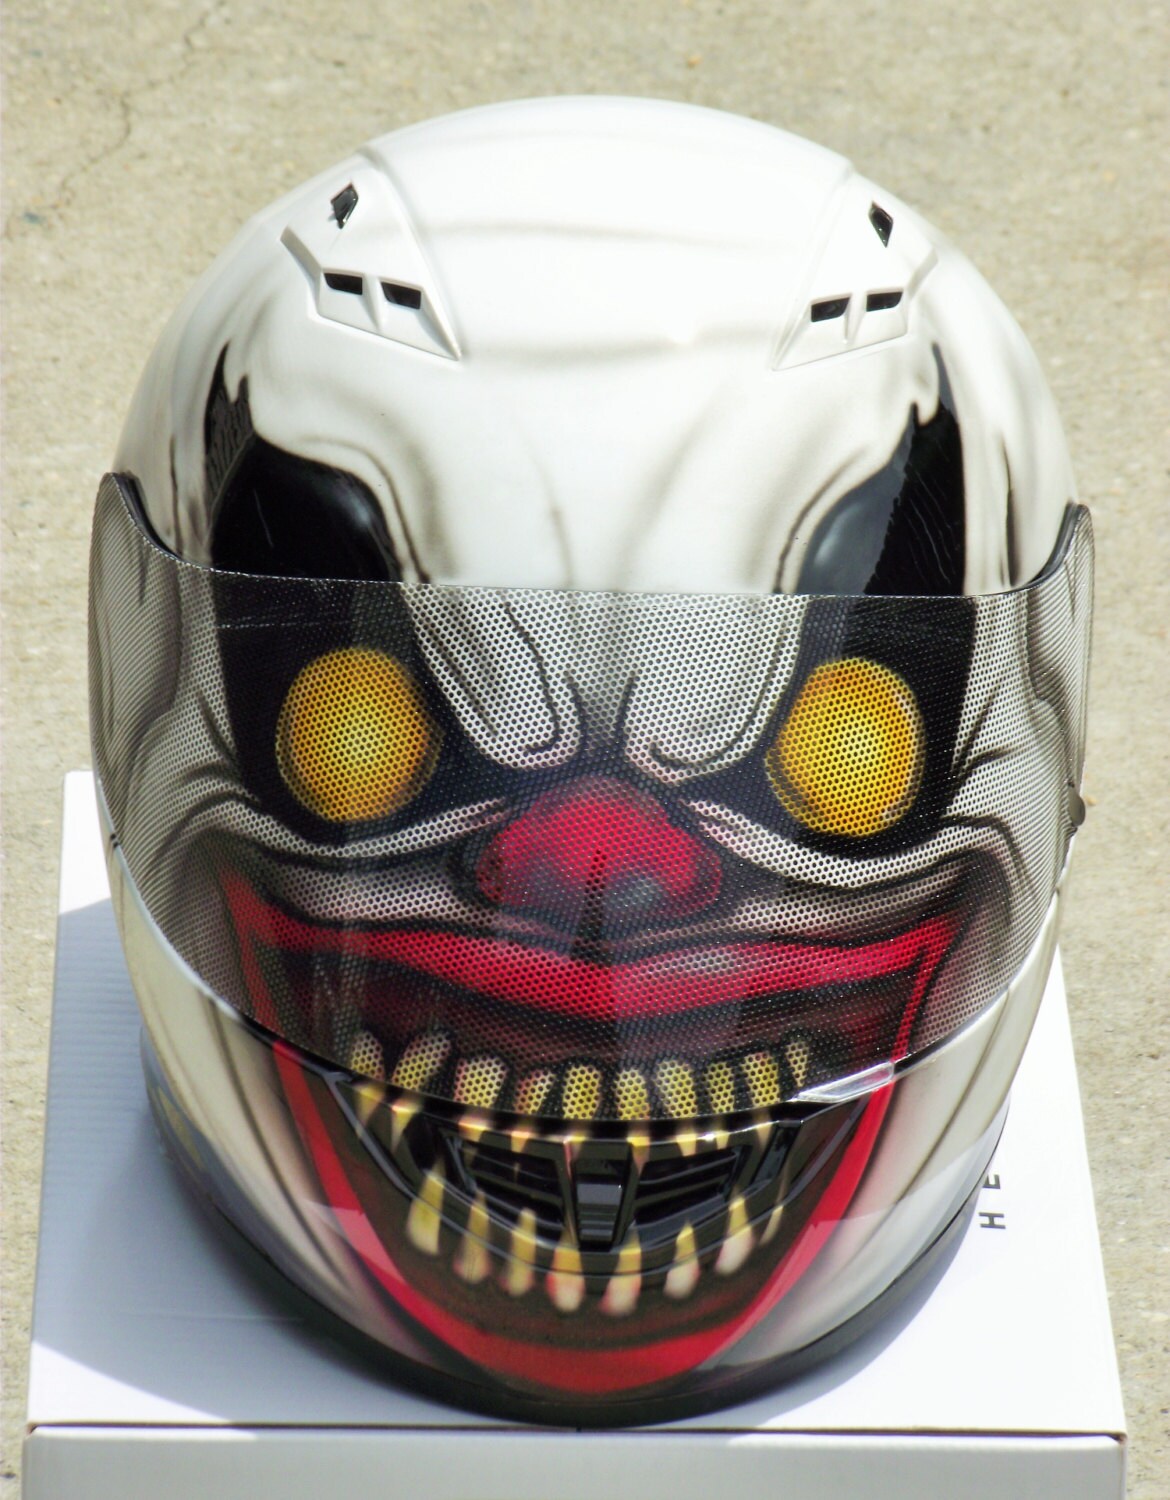 Scary Clown custom airbrush painted motorcycle helmet